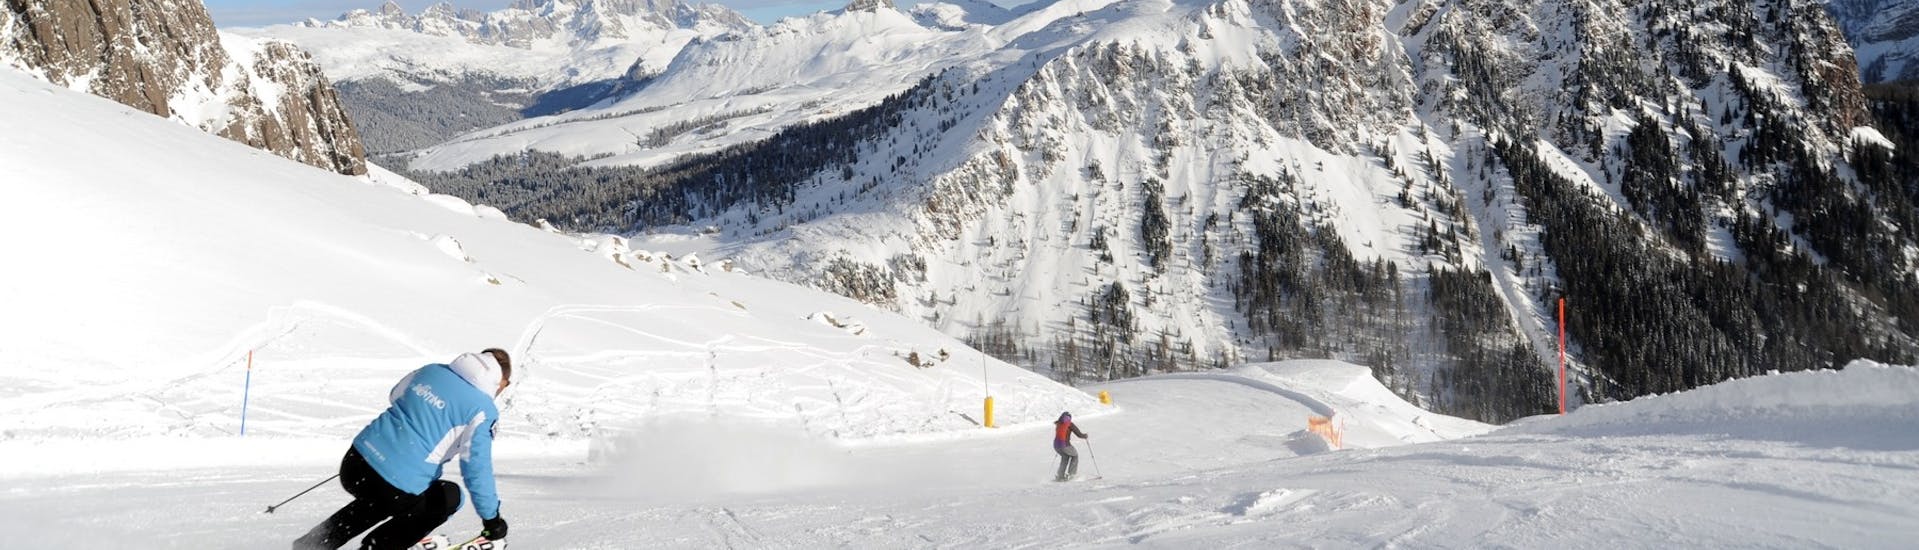 Degli sciatori sulle piste innevate delle Dolomiti durante le Lezioni di sci per adulti per tutti i livelli con Scuola Italiana Sci Dolomiti San Martino di Castrozza.